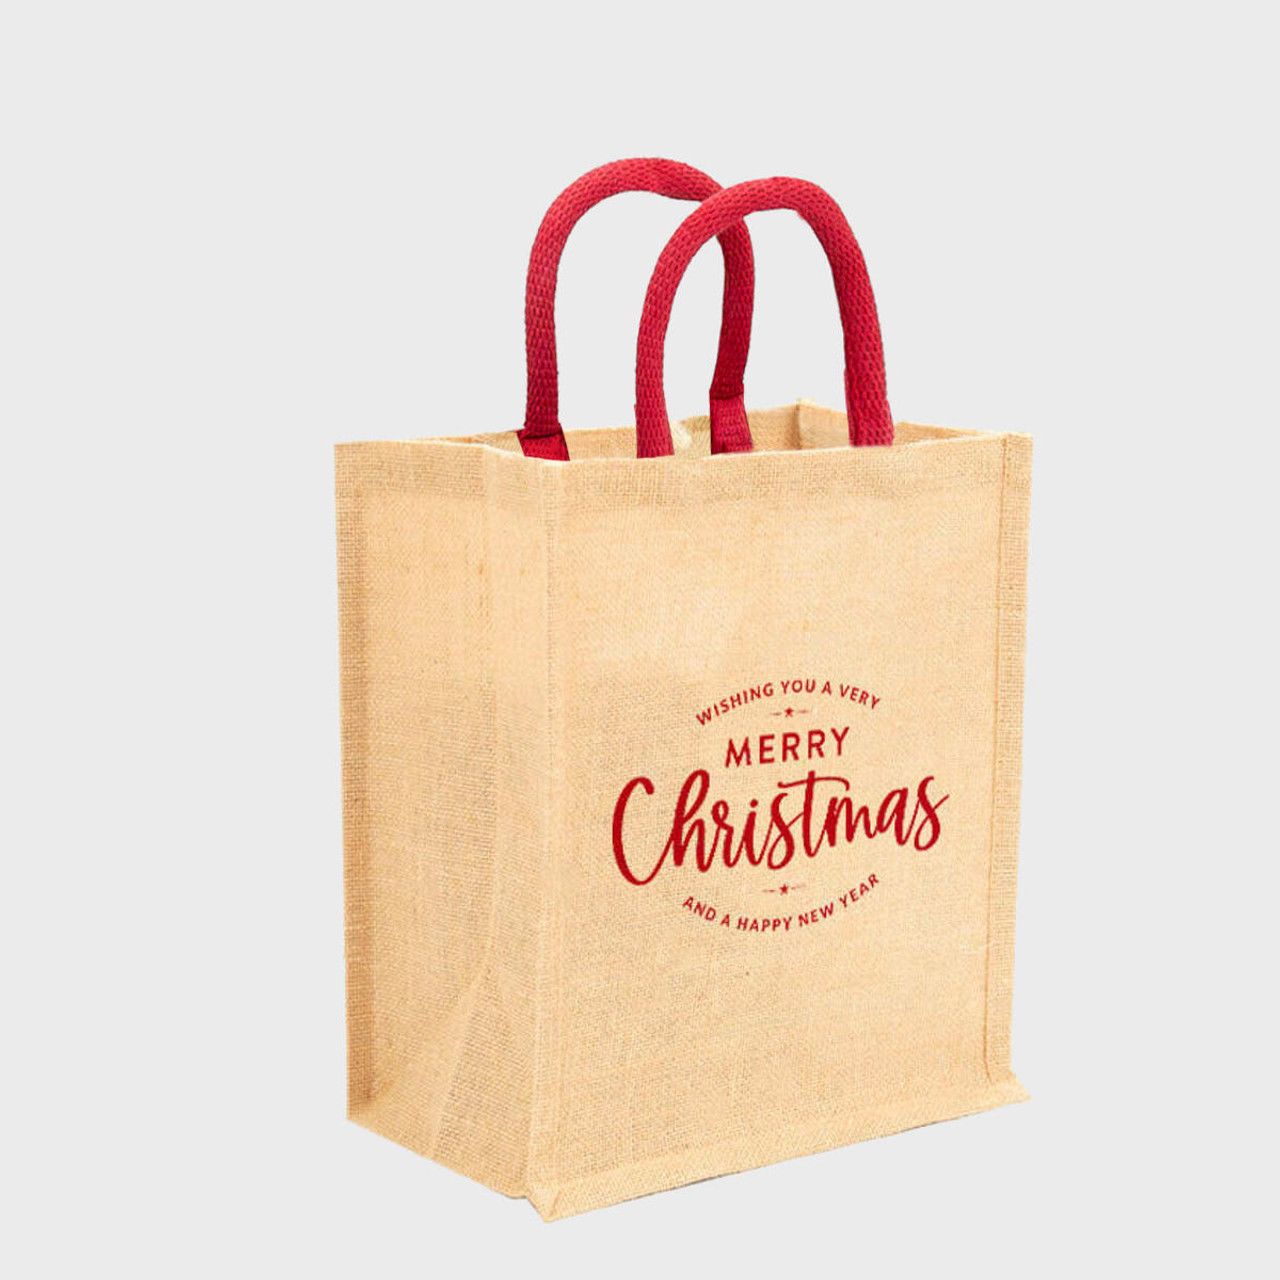 6 Wine Bottle Merry Christmas Jute Bag